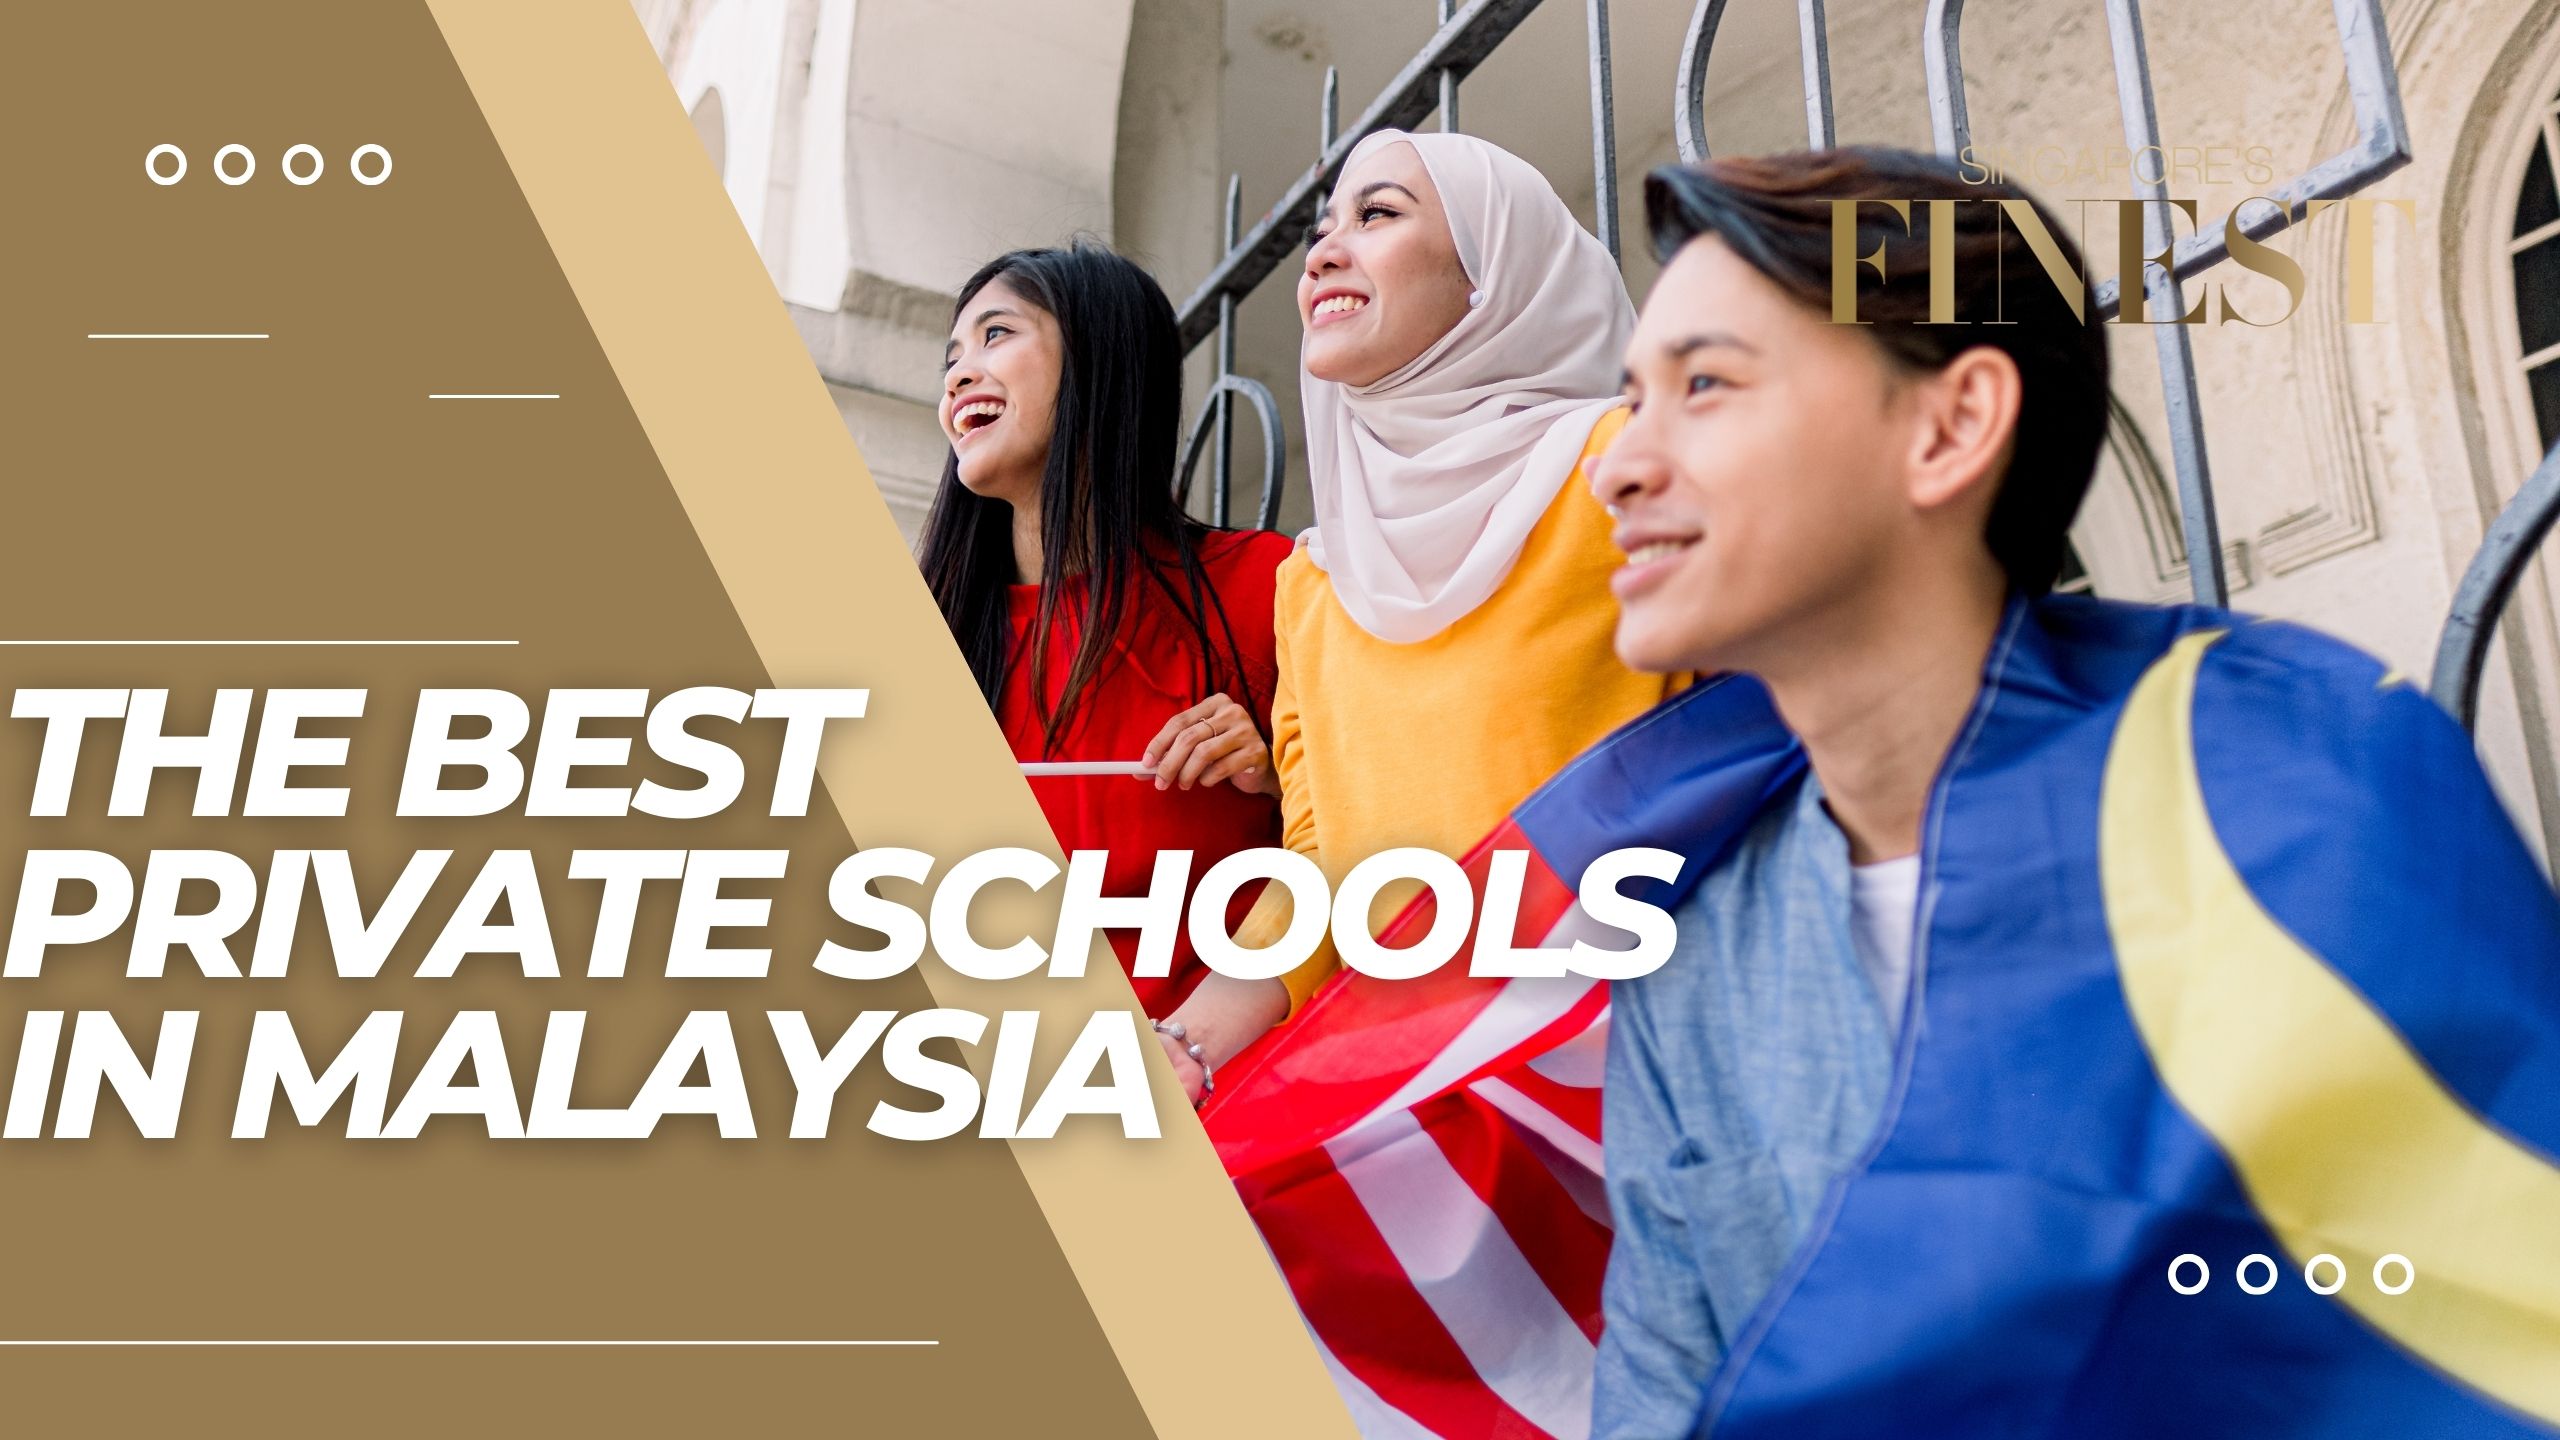 The Finest Private Schools in Malaysia